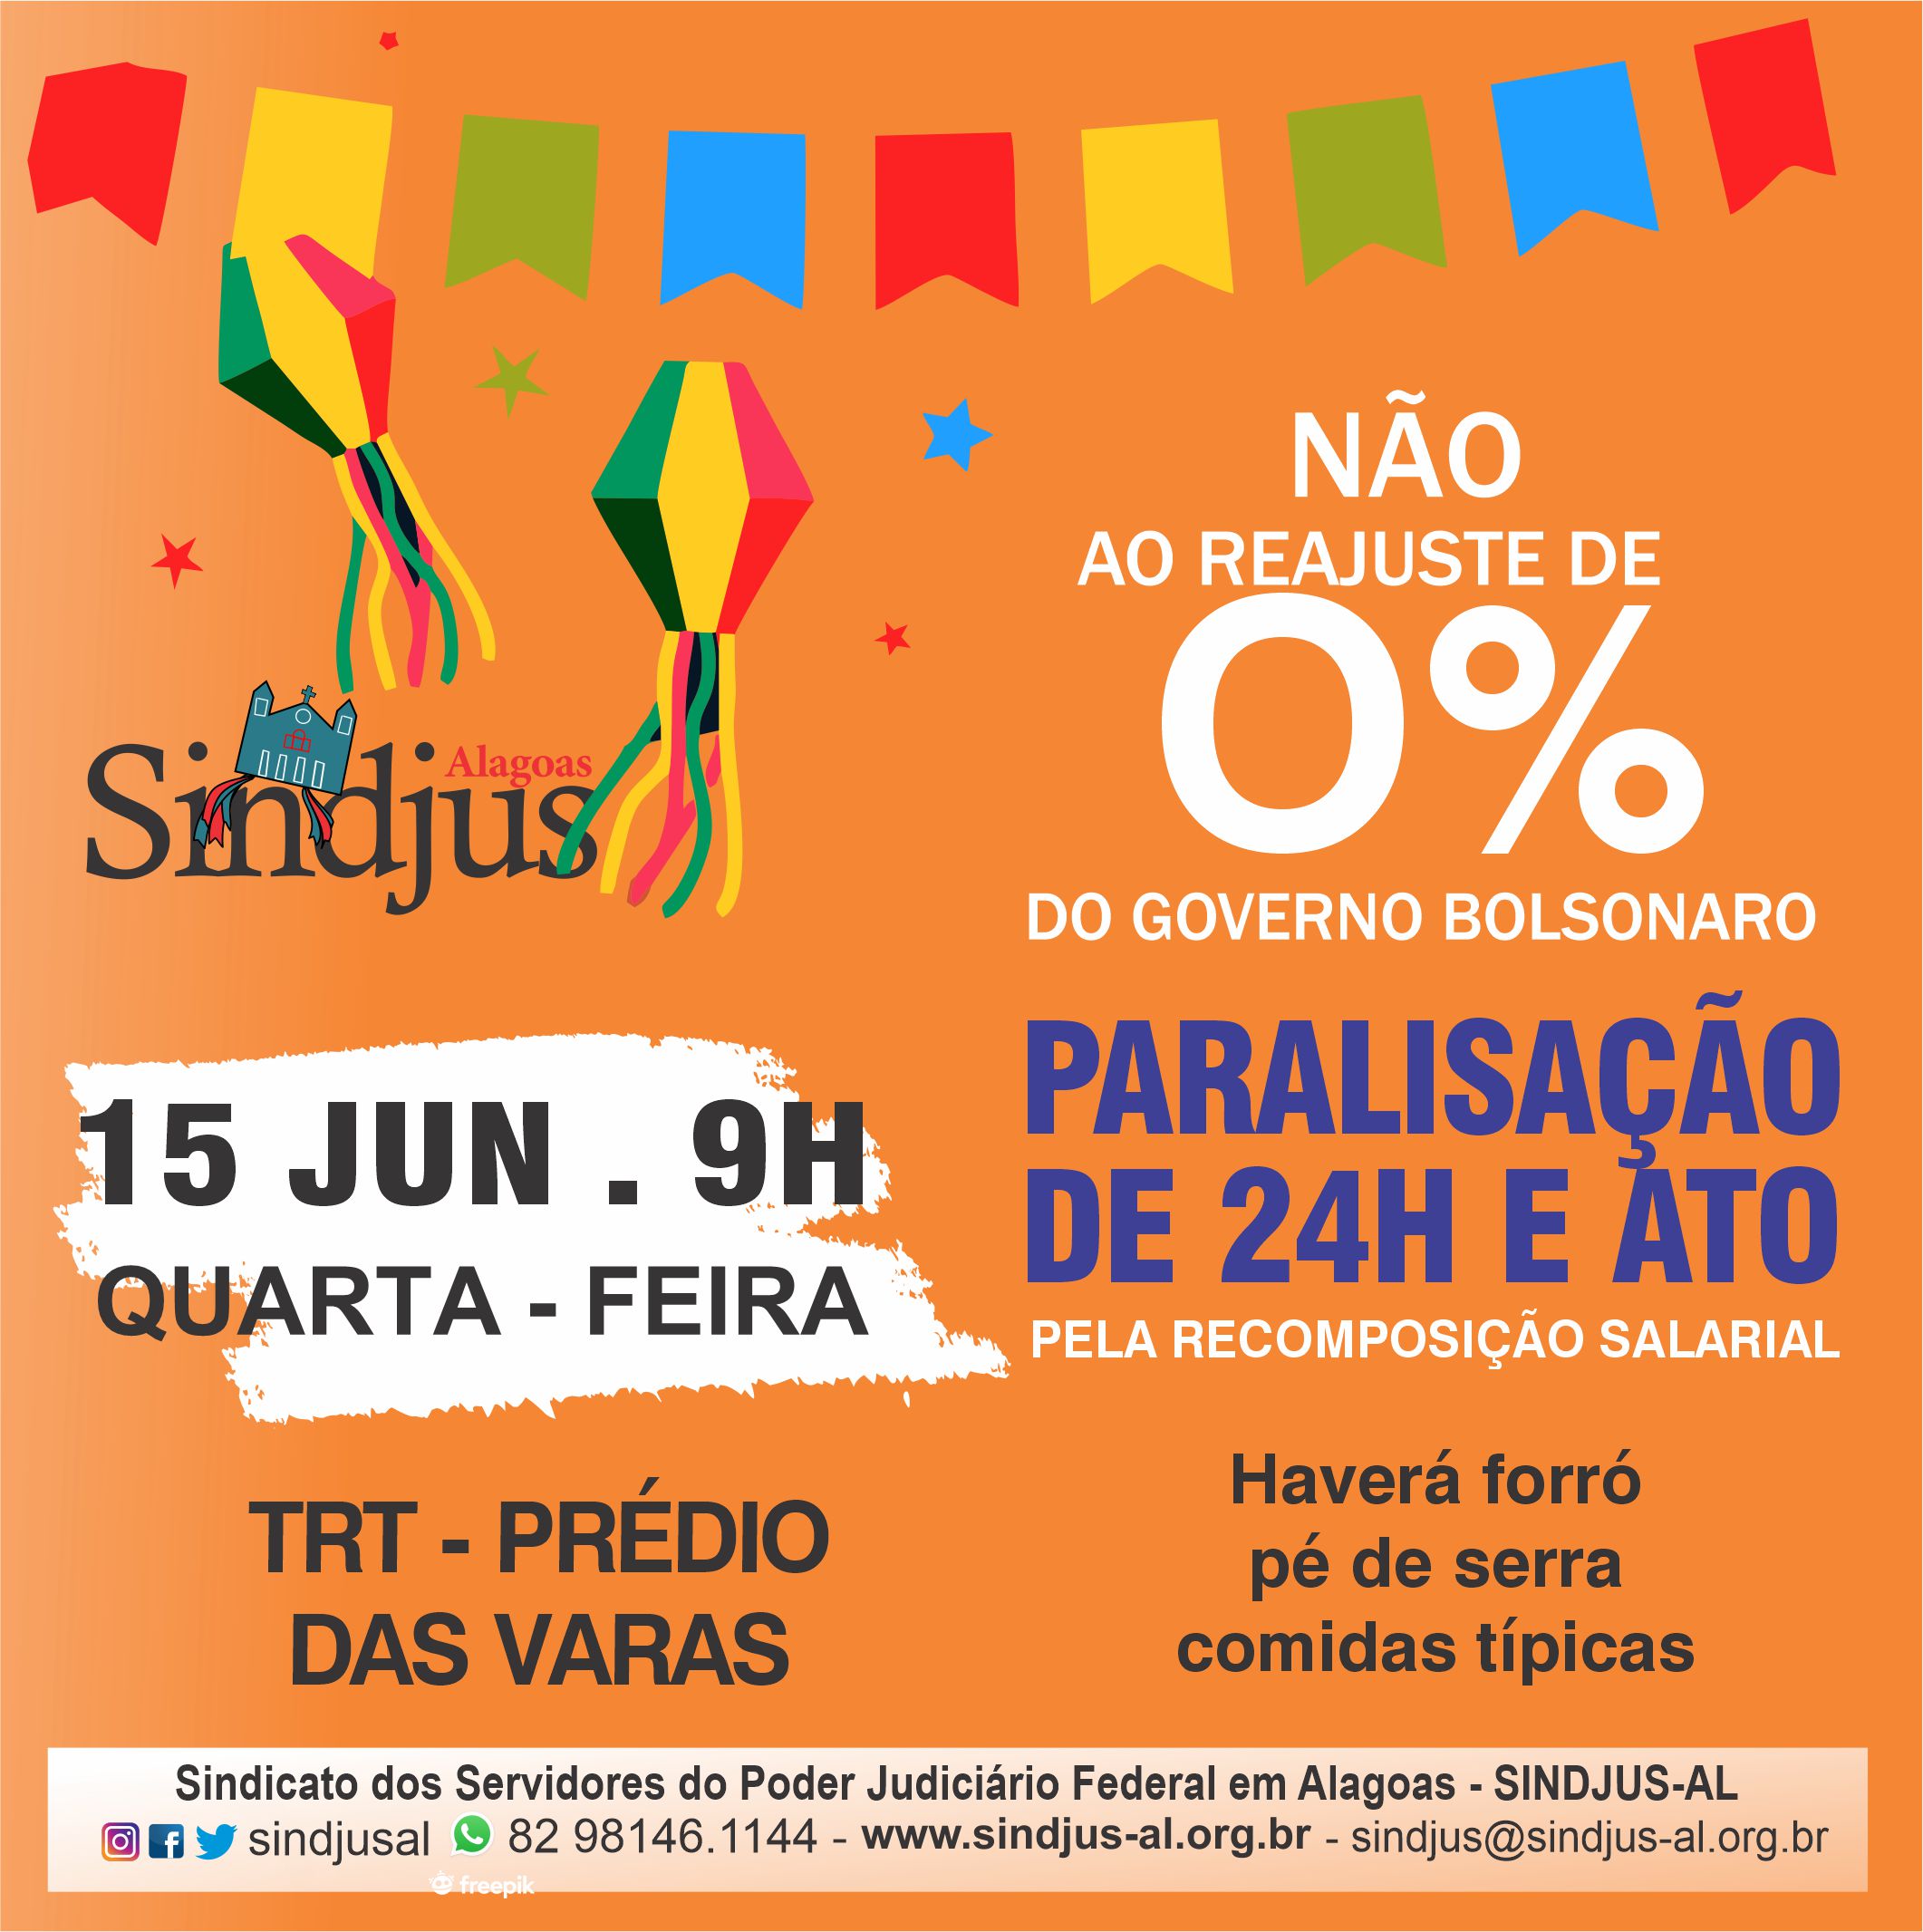 Servidores do Judiciário Federal de Alagoas farão paralisação de 24h contra o reajuste de 0% nesta quarta-feira (15)